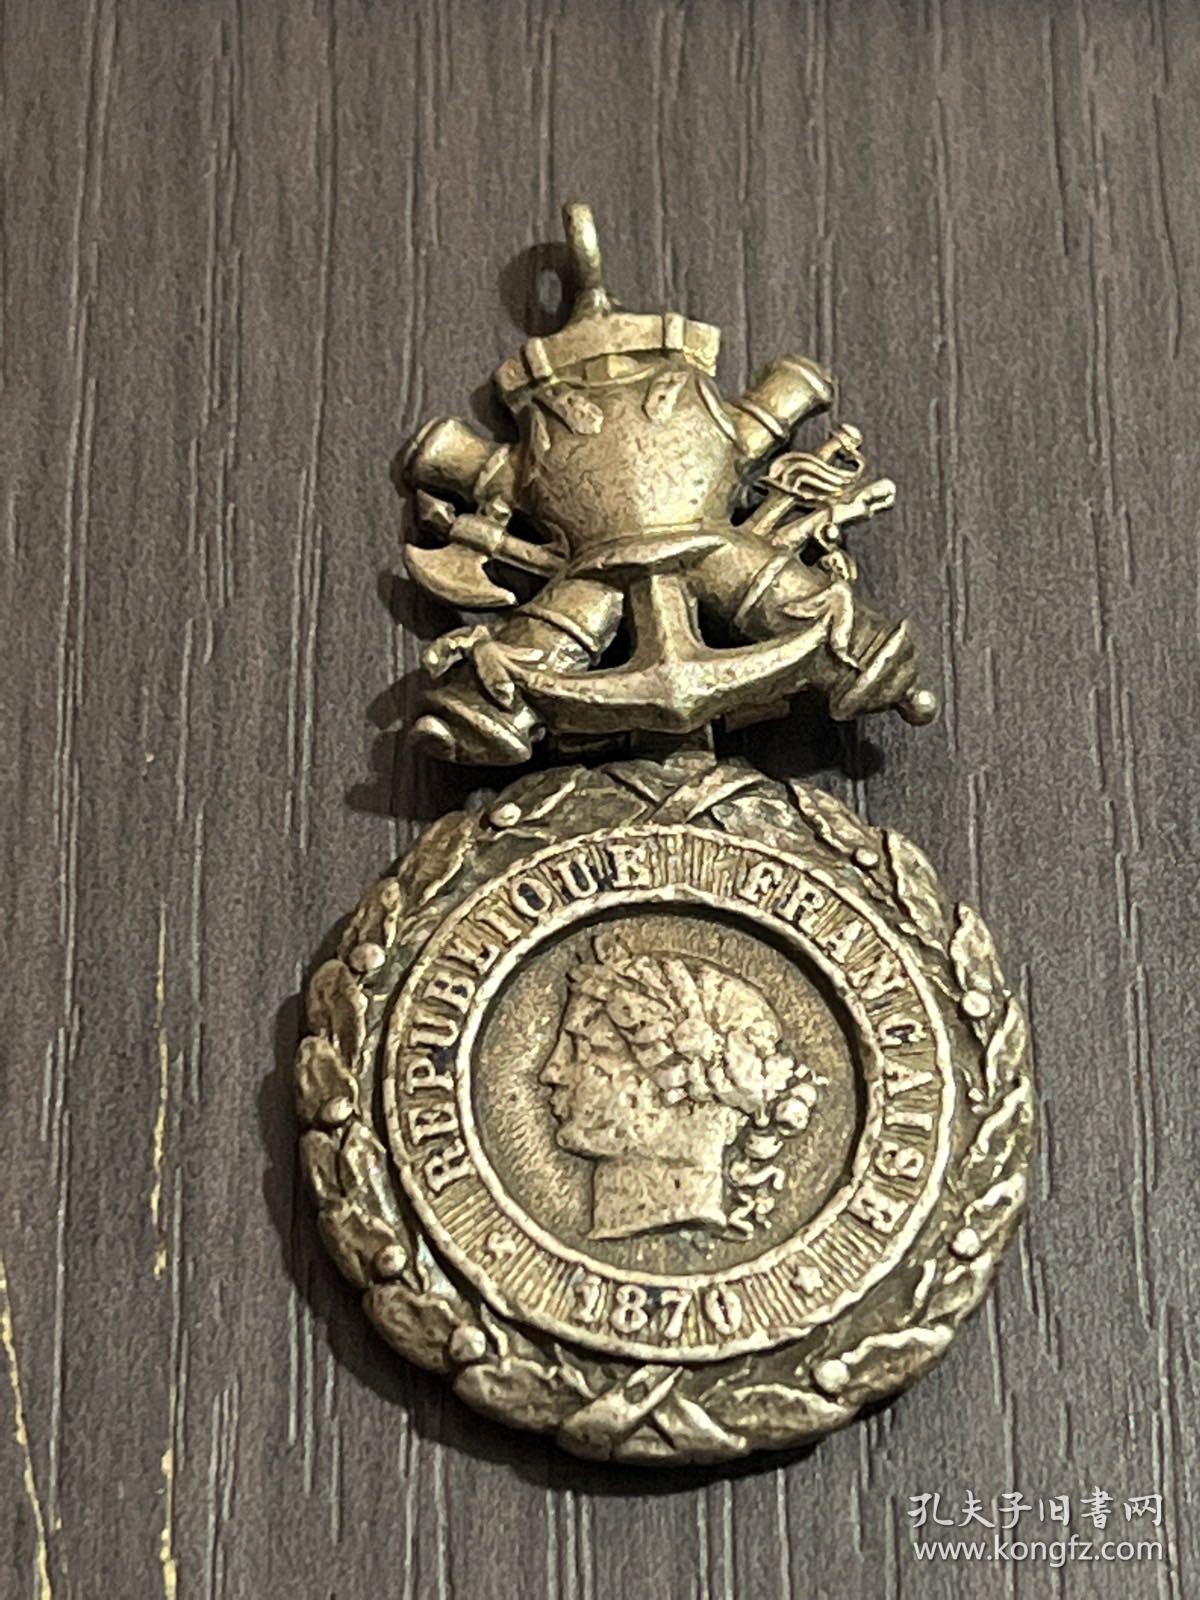 来自罗马的银勋章1870年纯银